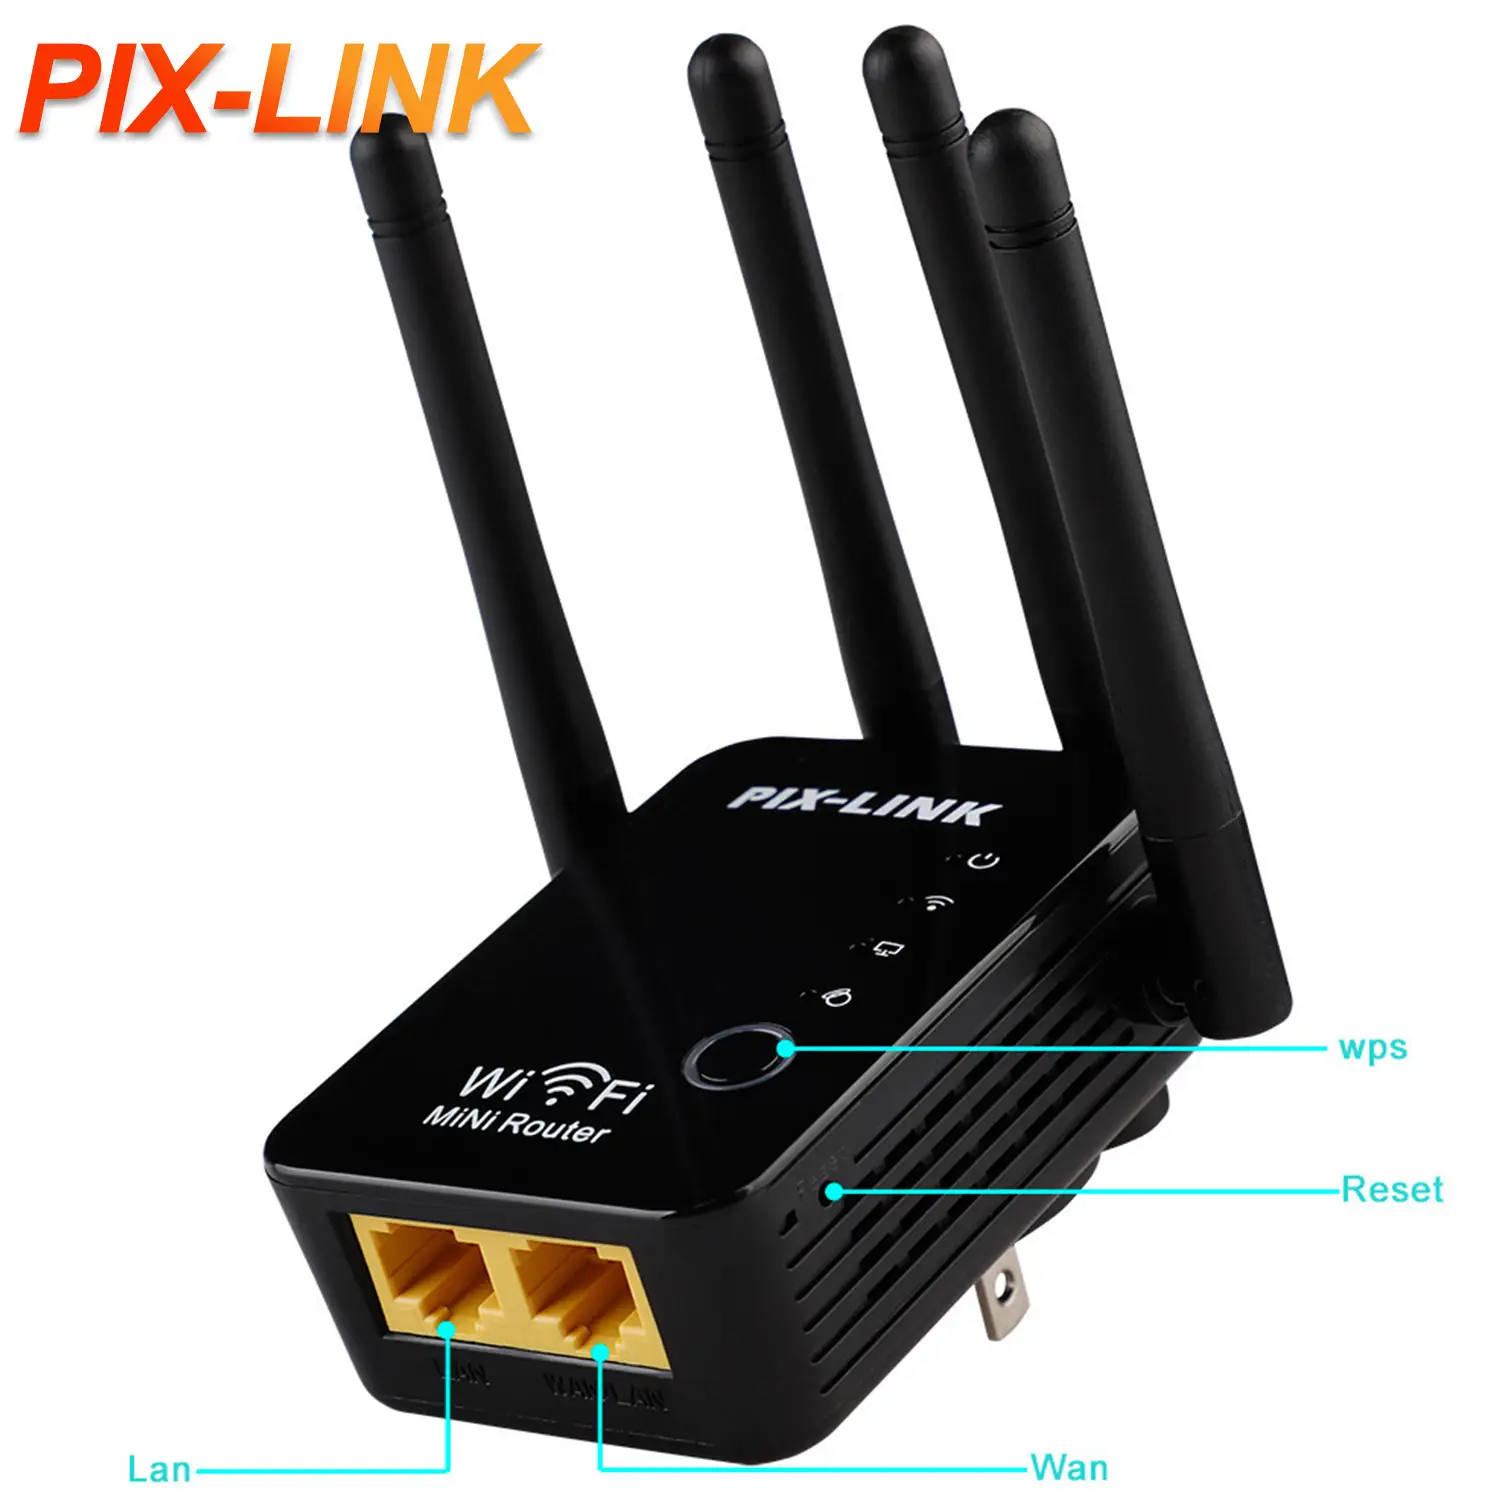 PIX-LINK WiFi uzatıcılar sinyal güçlendirici 2.4 GHz WiFi amplifikatör 300Mbps kolay kurulum 4 anten Ethernet portu ile ev için uzun menzilli